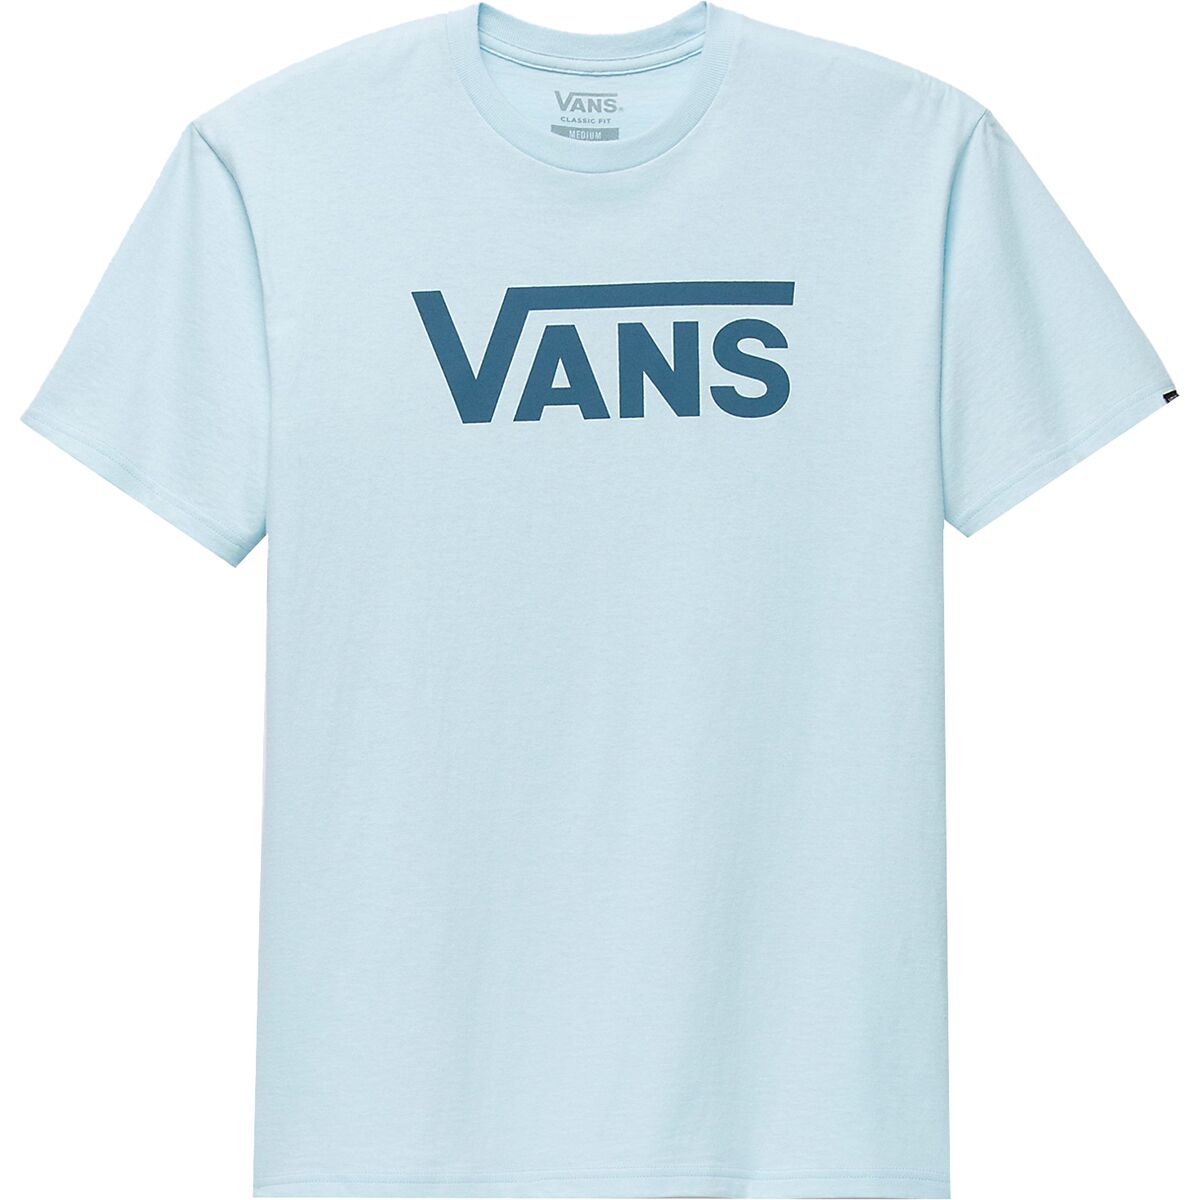 Vans Classic T-Shirt - Clothing